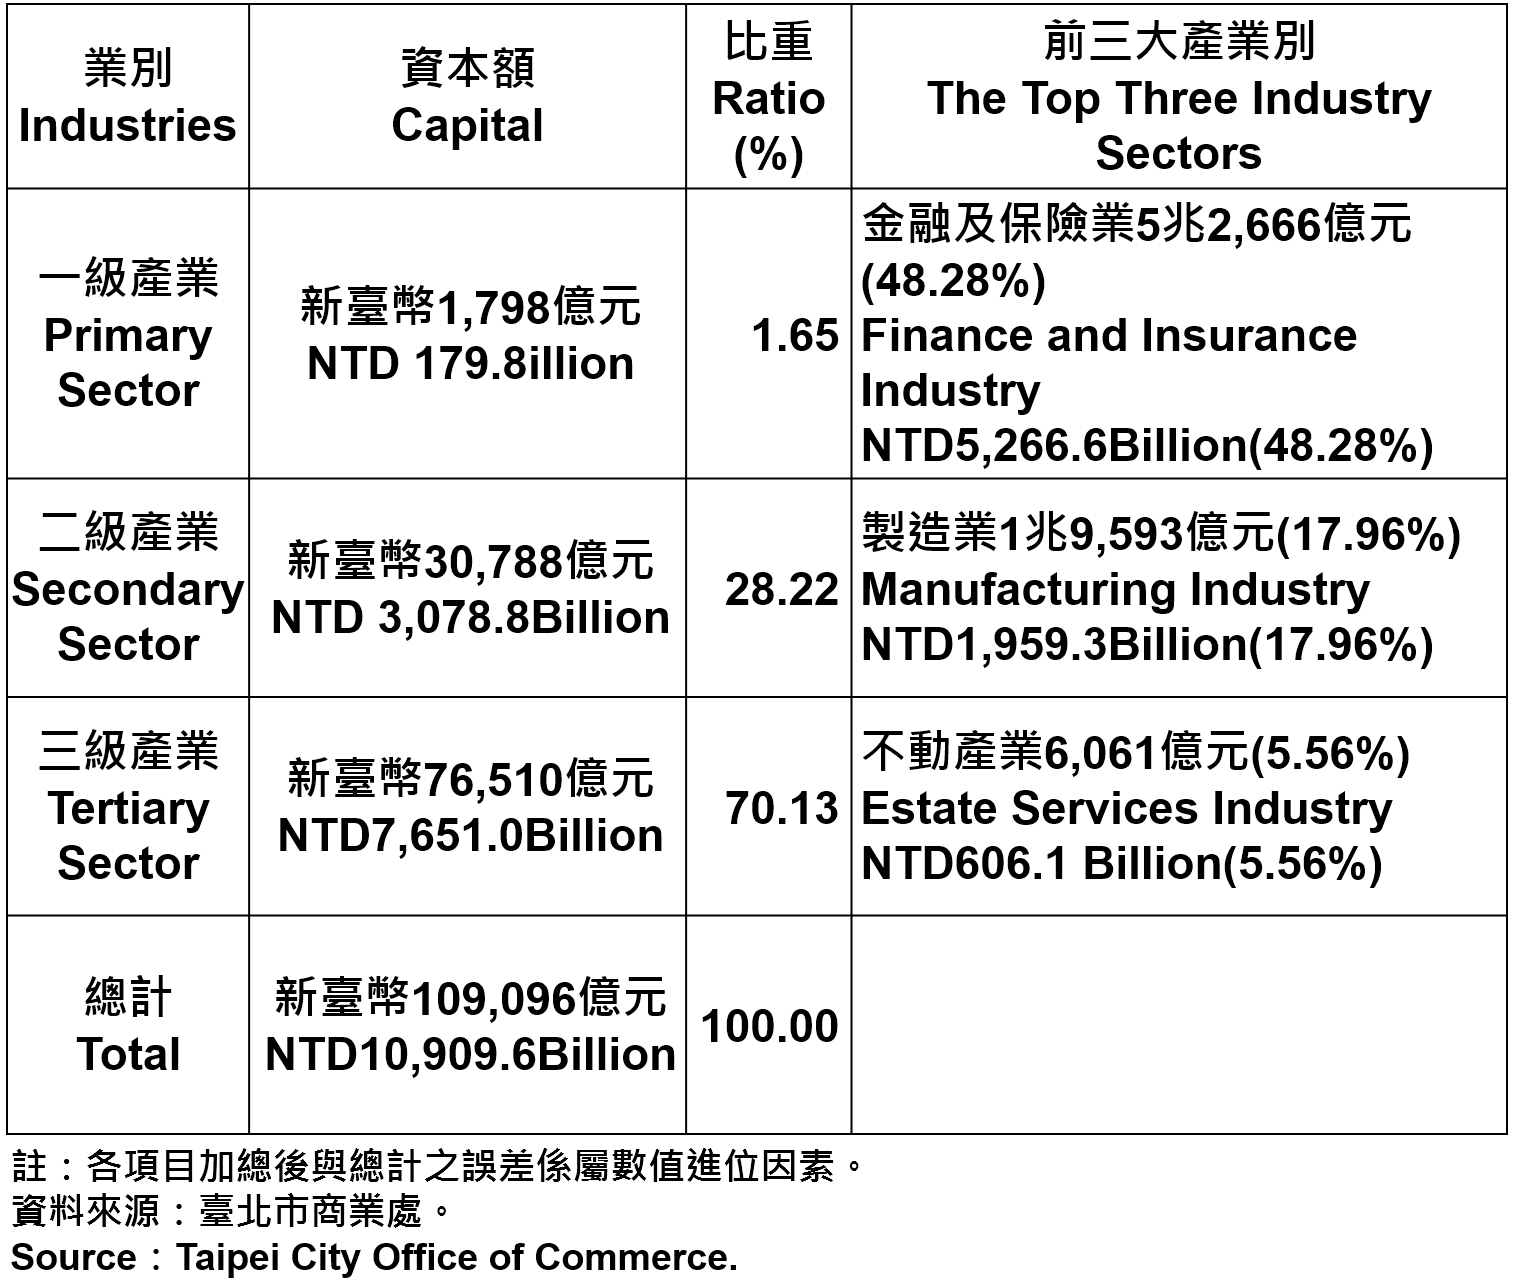 表4 臺北市登記之公司行號資本總額—2014年第4季2014Q4 Ratios of Capital for the Companies and Firms Registered in Taipei by Industry